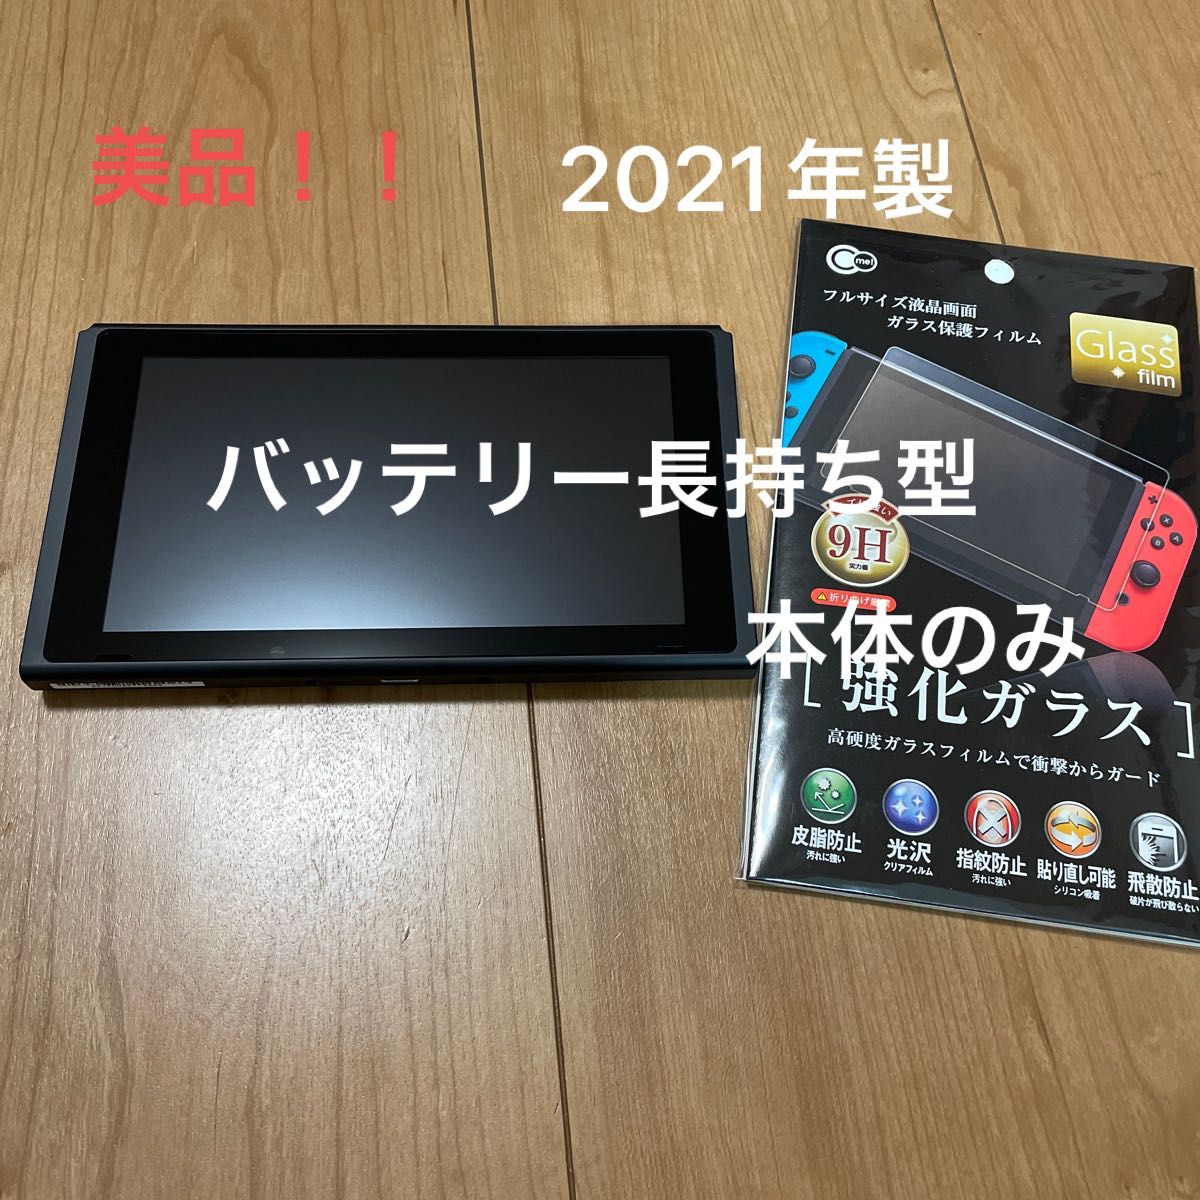 11132【2021年製】新型Nintendo Switch 本体のみ 美品 テレビゲーム